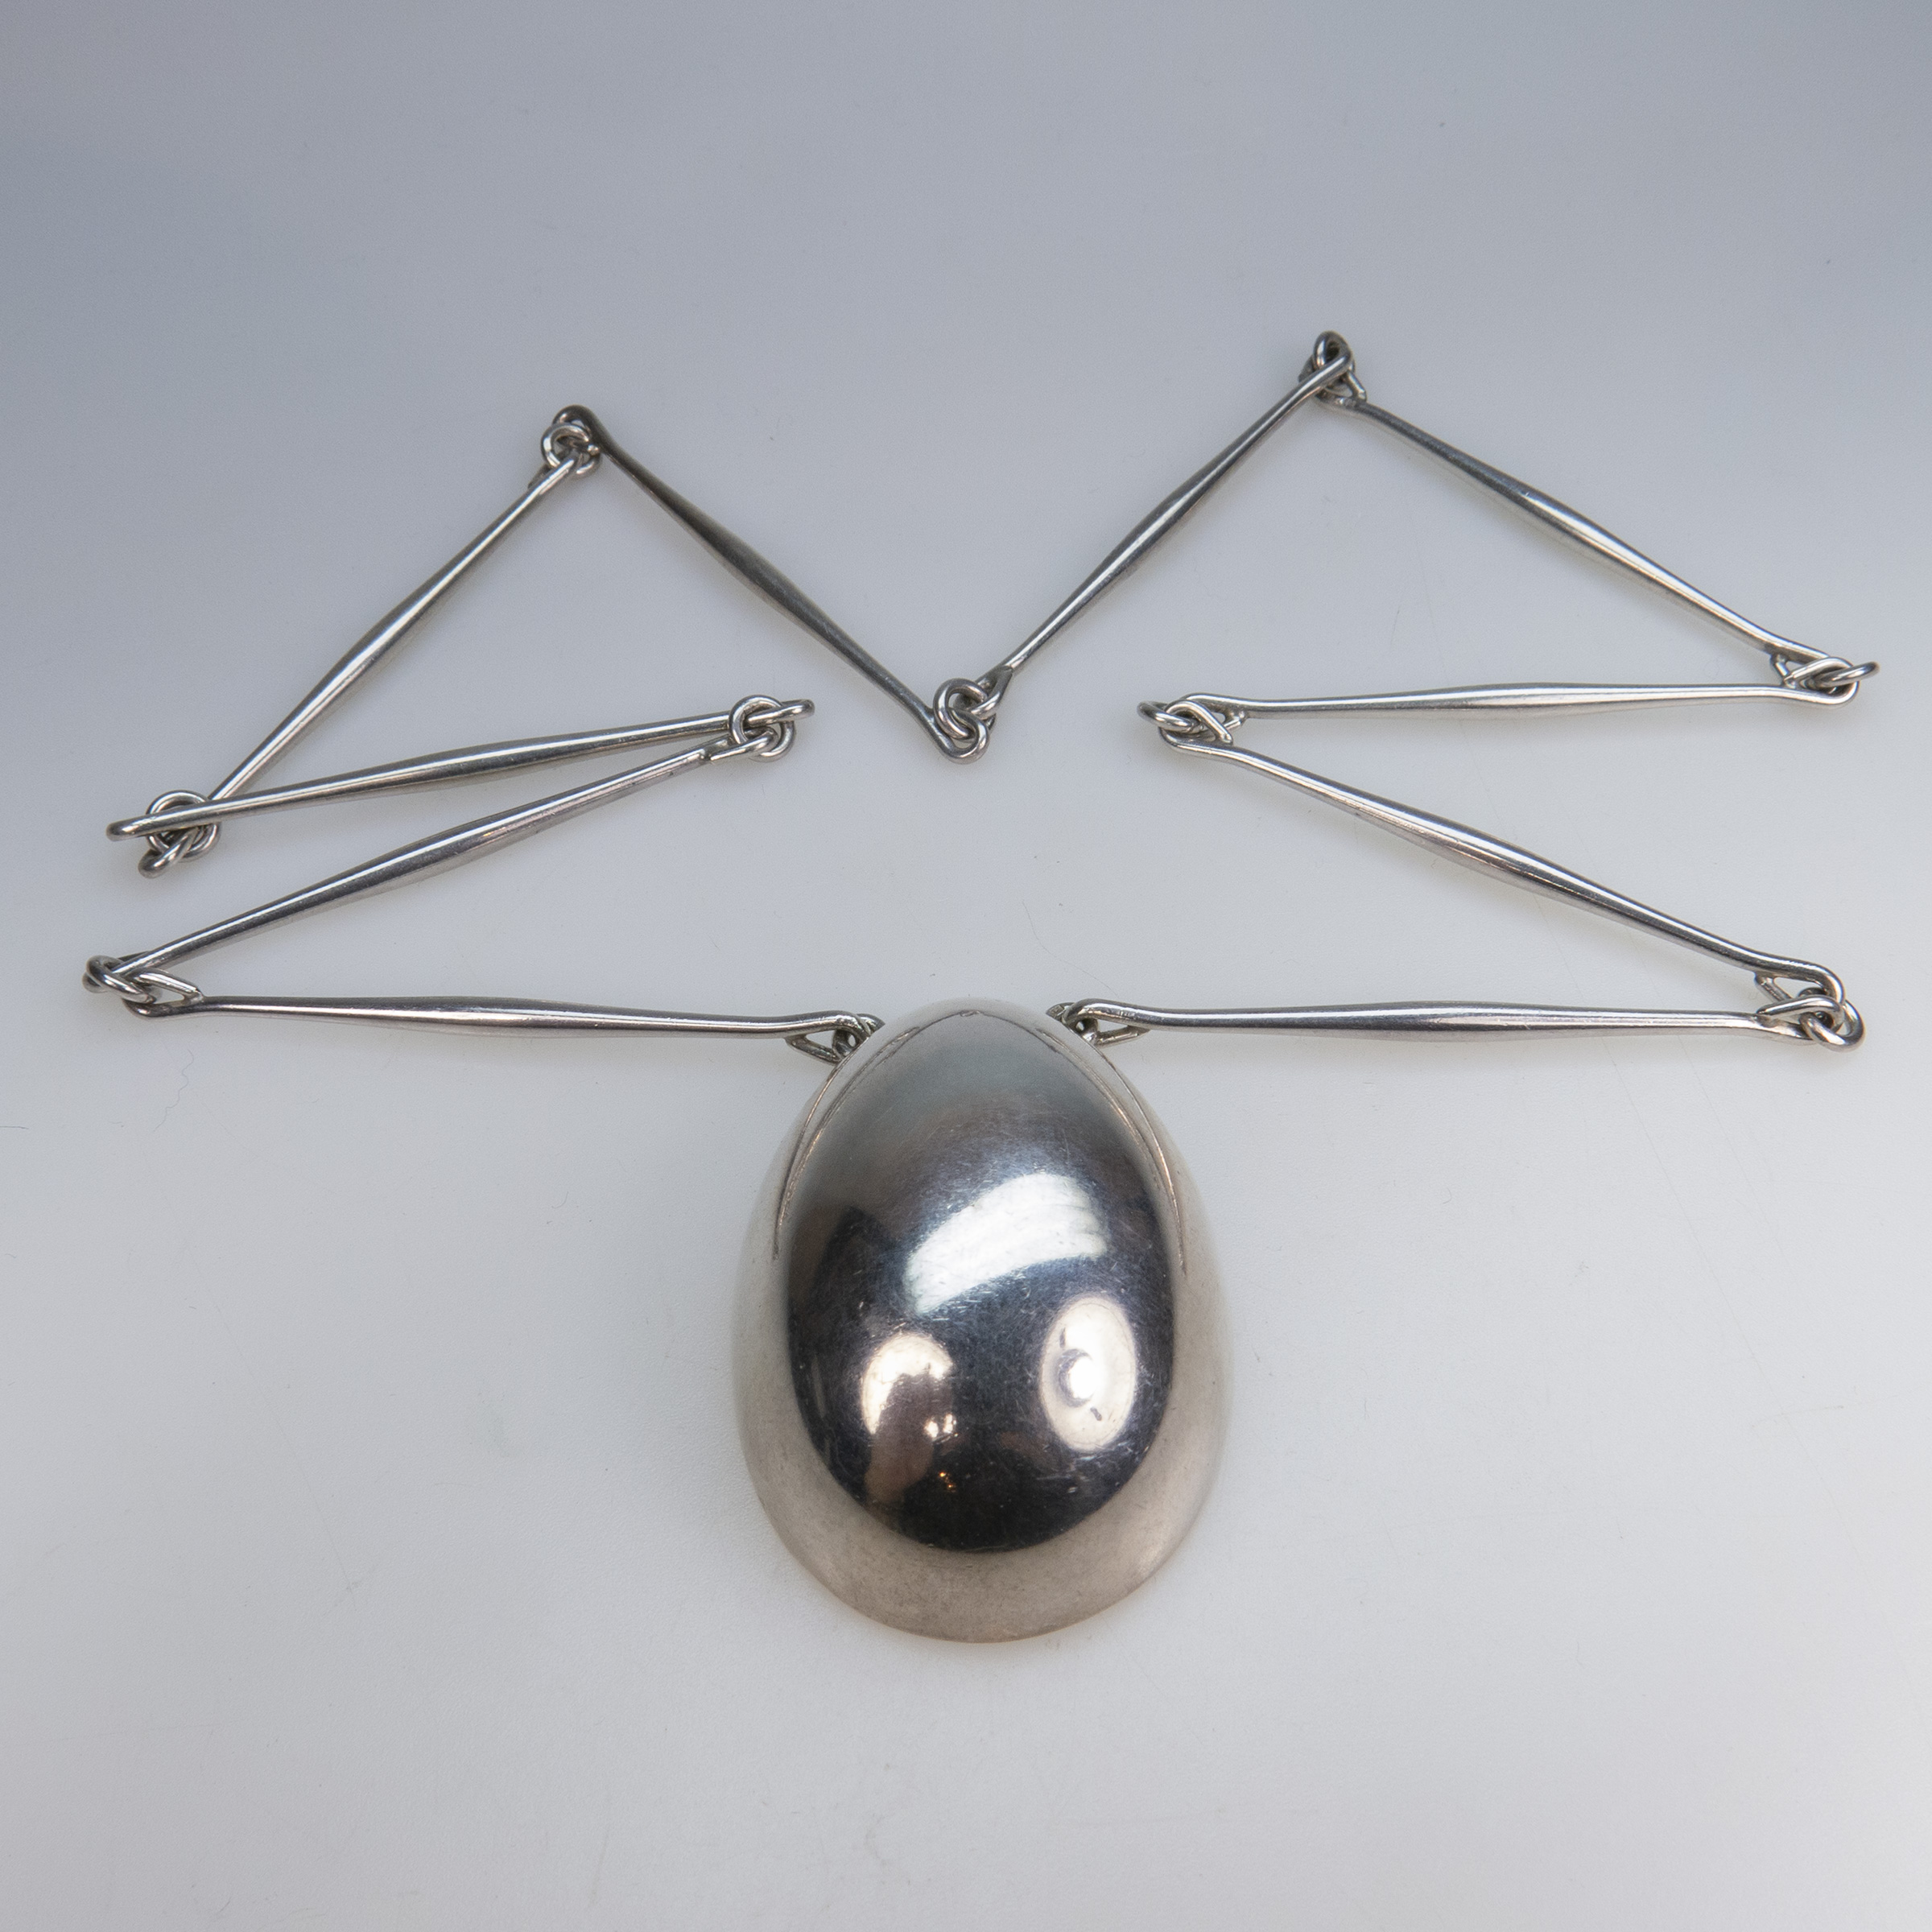 Georg Jensen Danish Sterling Silver Egg-Shaped Pendant